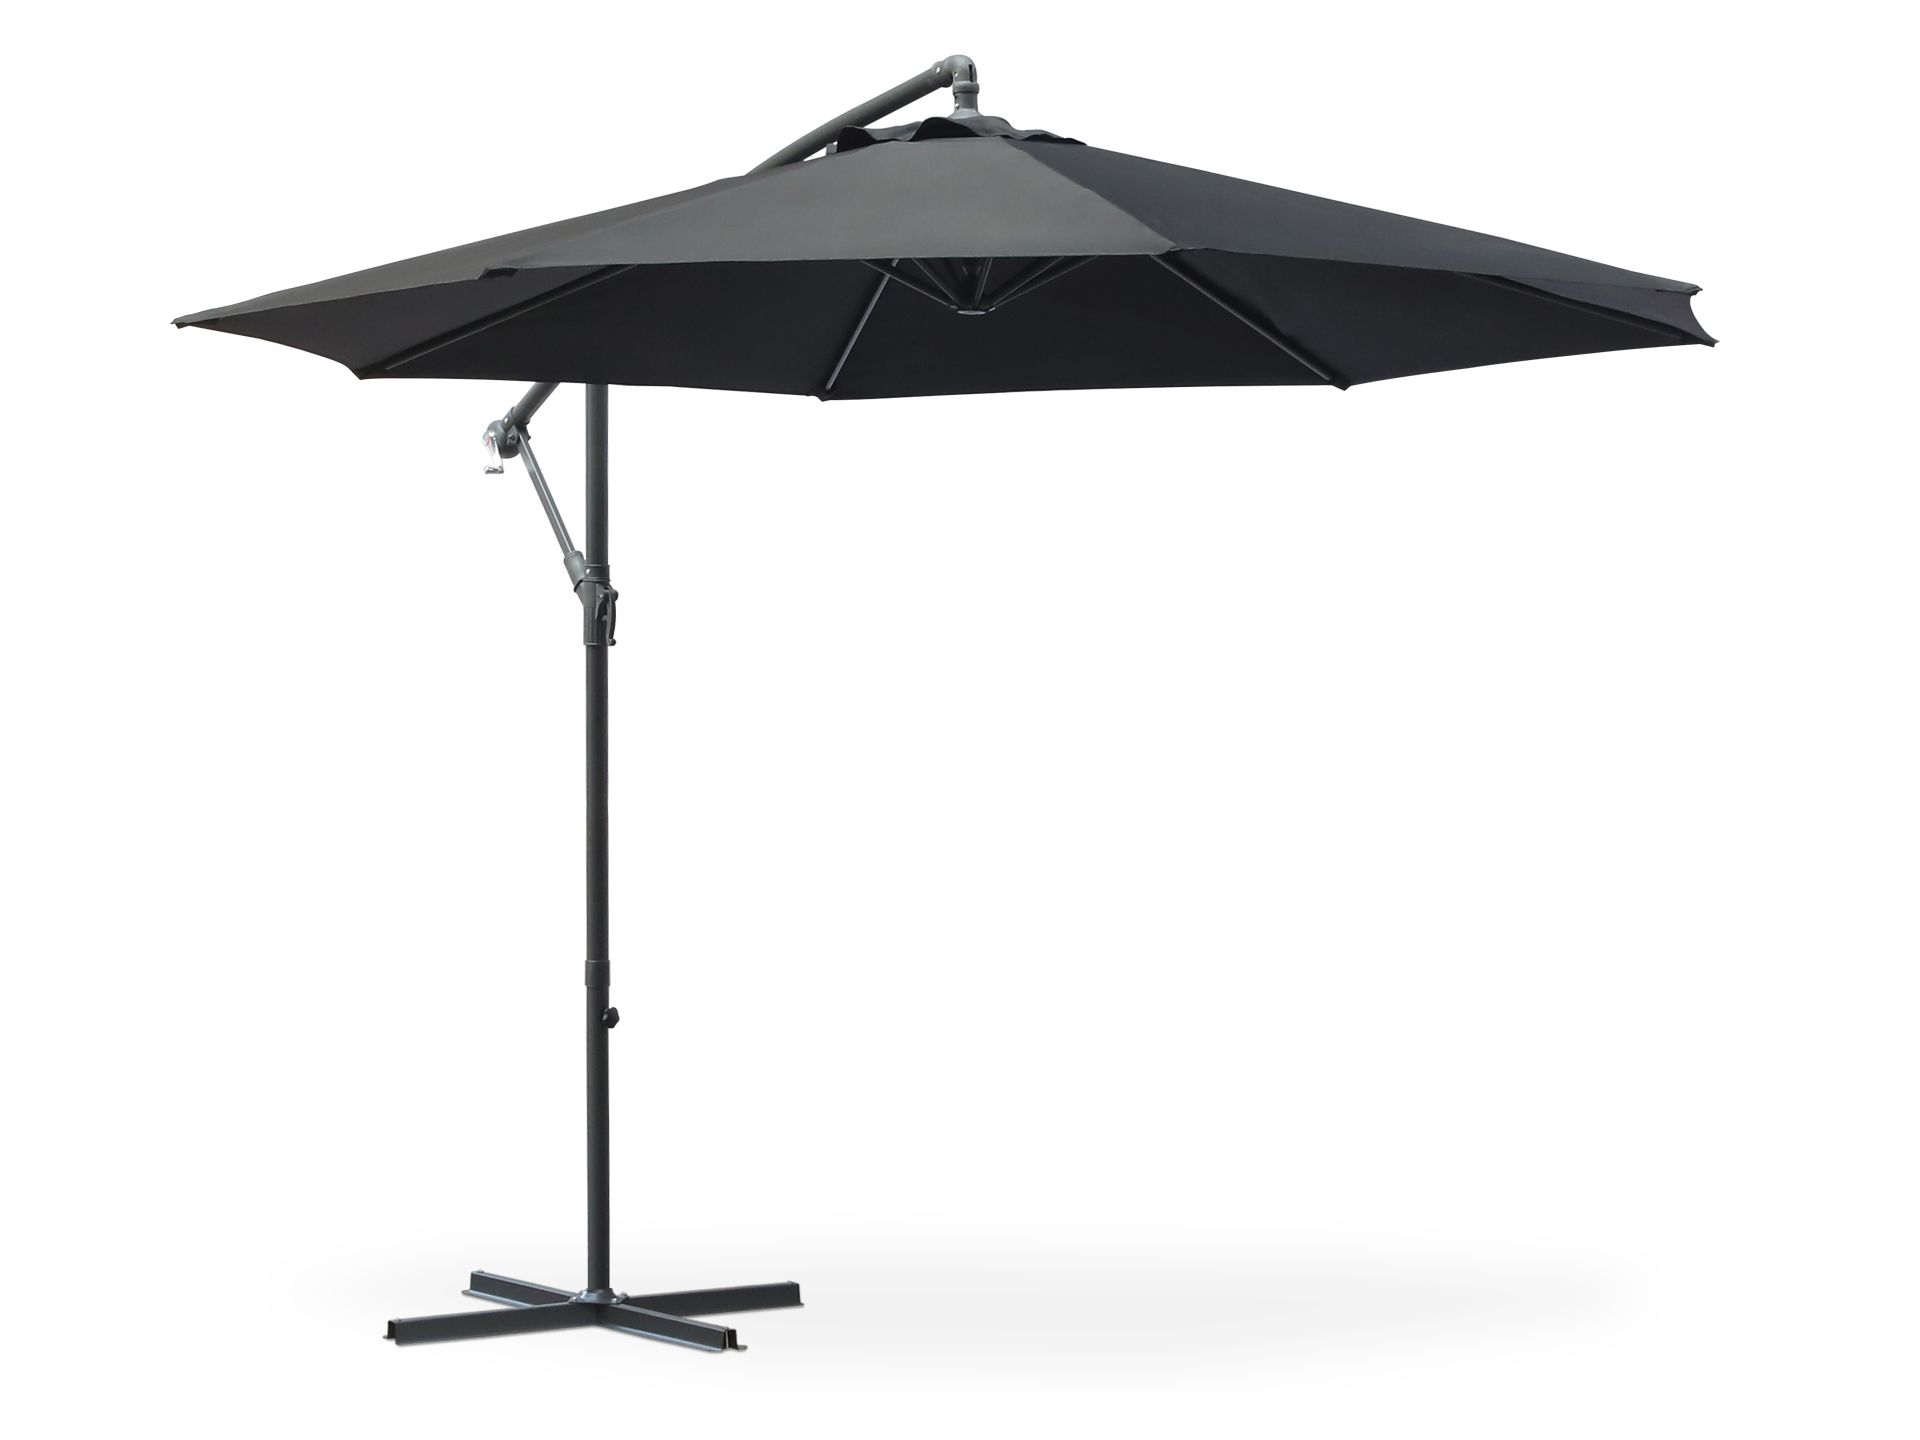 Toughout Kauri Outdoor Cantilever Umbrella 3m - Black